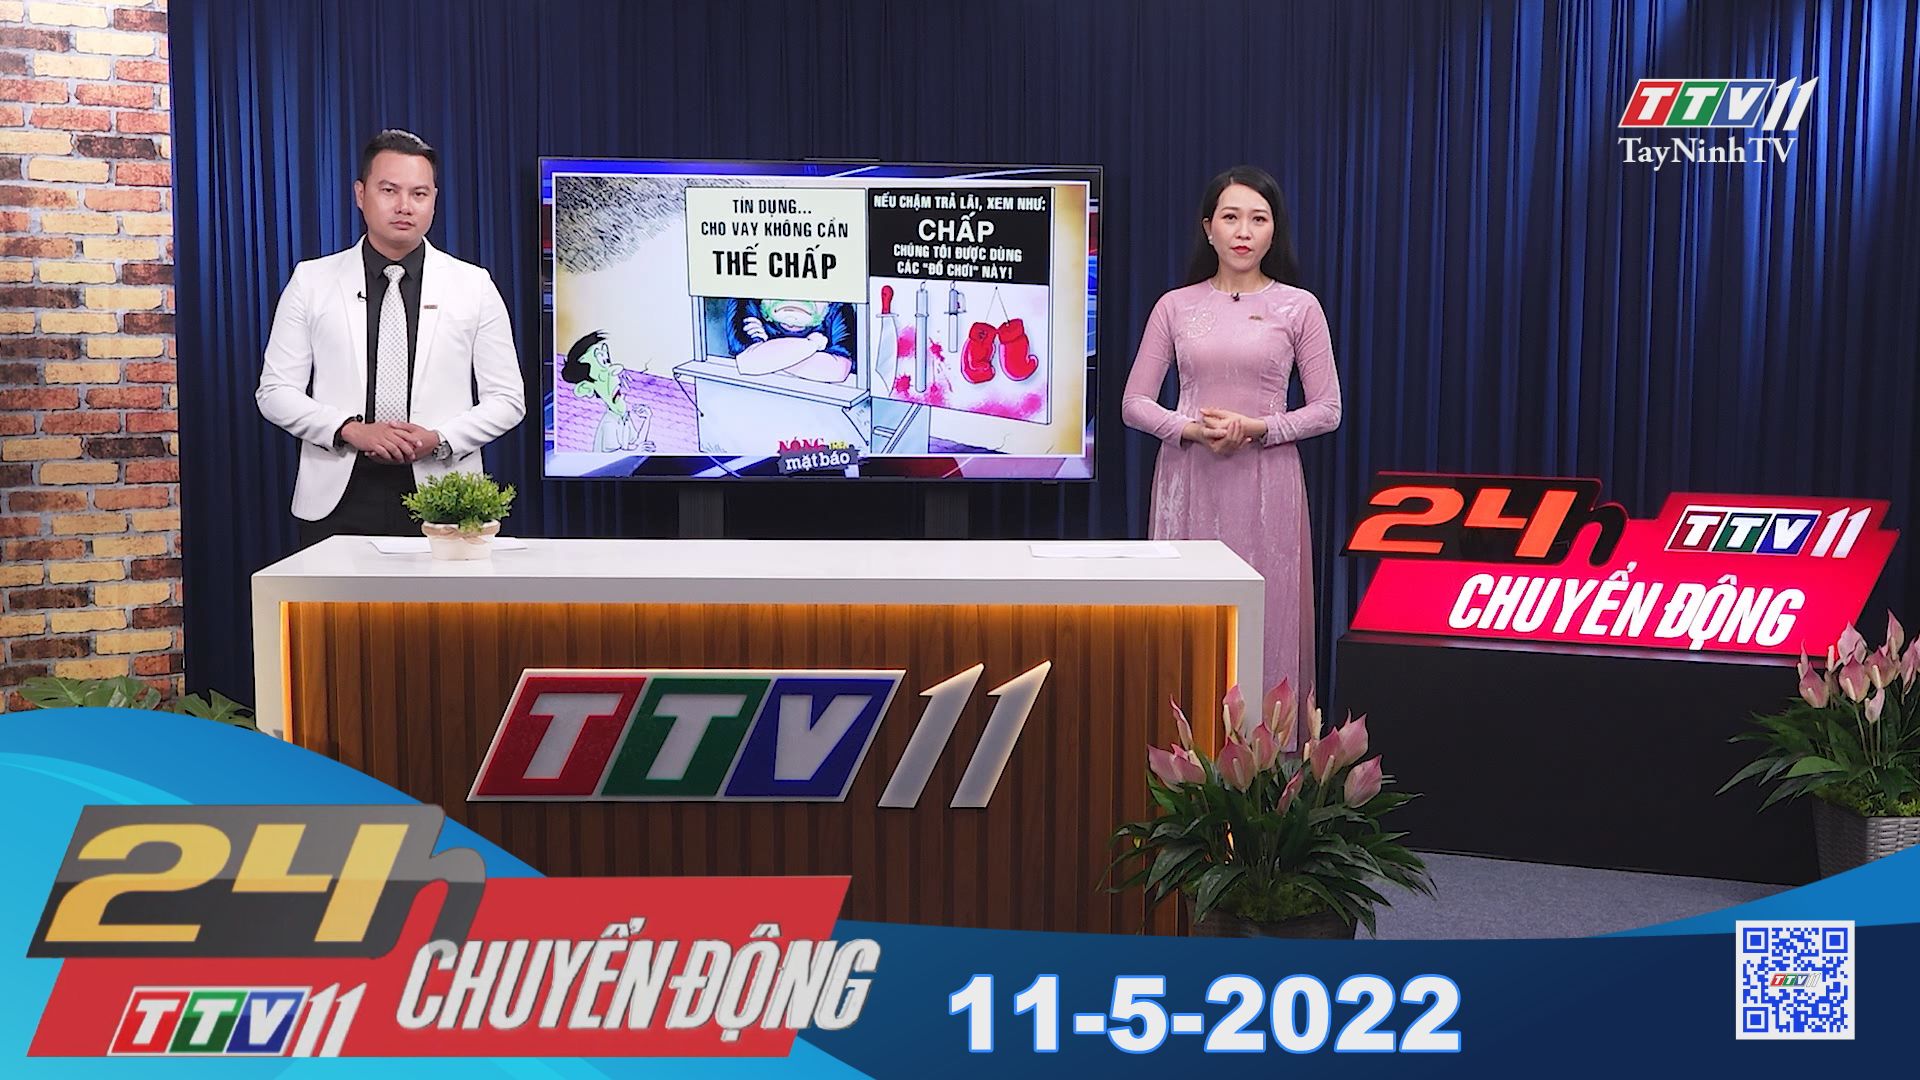 24h Chuyển động 11-5-2022 | Tin tức hôm nay | TayNinhTV